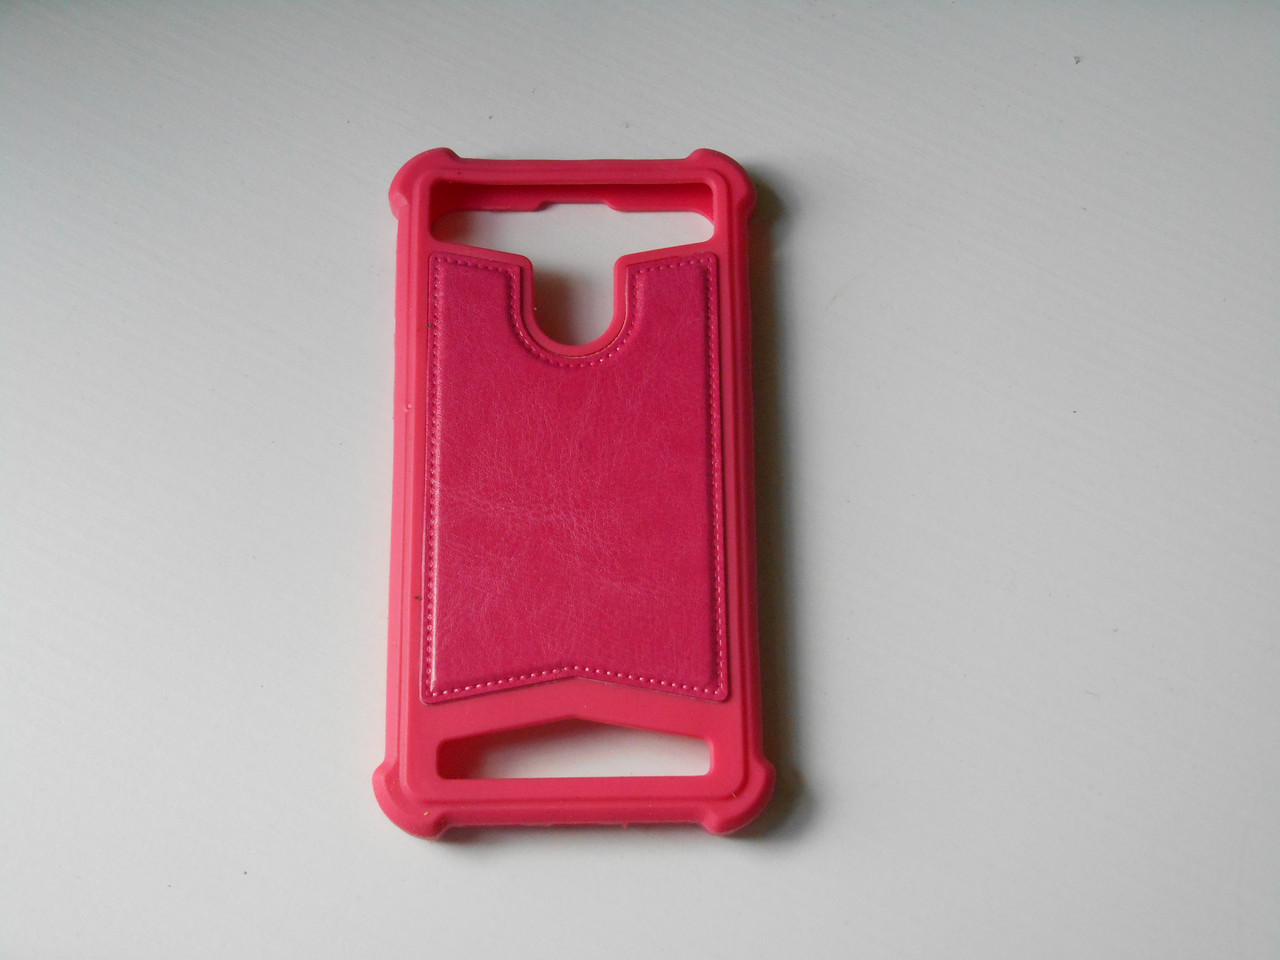 Універсальний силіконовий чохол з вставками шкіри для телефона розмір 4.5 дюйма екран червоного кольору